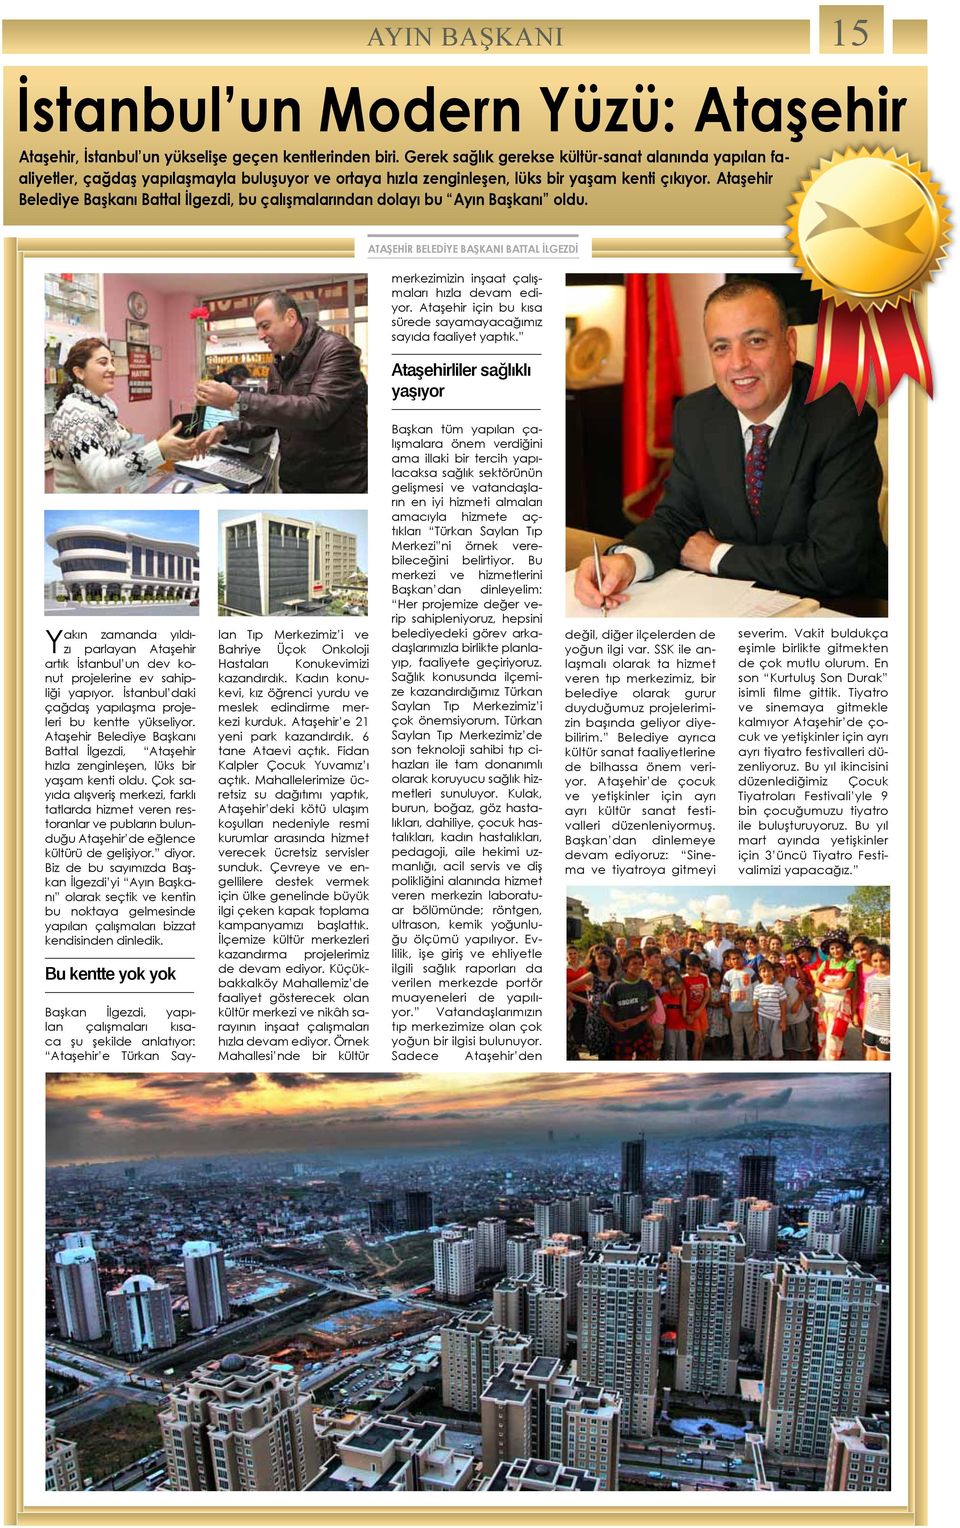 Ataşehir Belediye Başkanı Battal İlgezdi, bu çalışmalarından dolayı bu Ayın Başkanı oldu. ATAŞEHİR Belediye Başkanı BATTAL İLGEZDİ merkezimizin inşaat çalışmaları hızla devam ediyor.